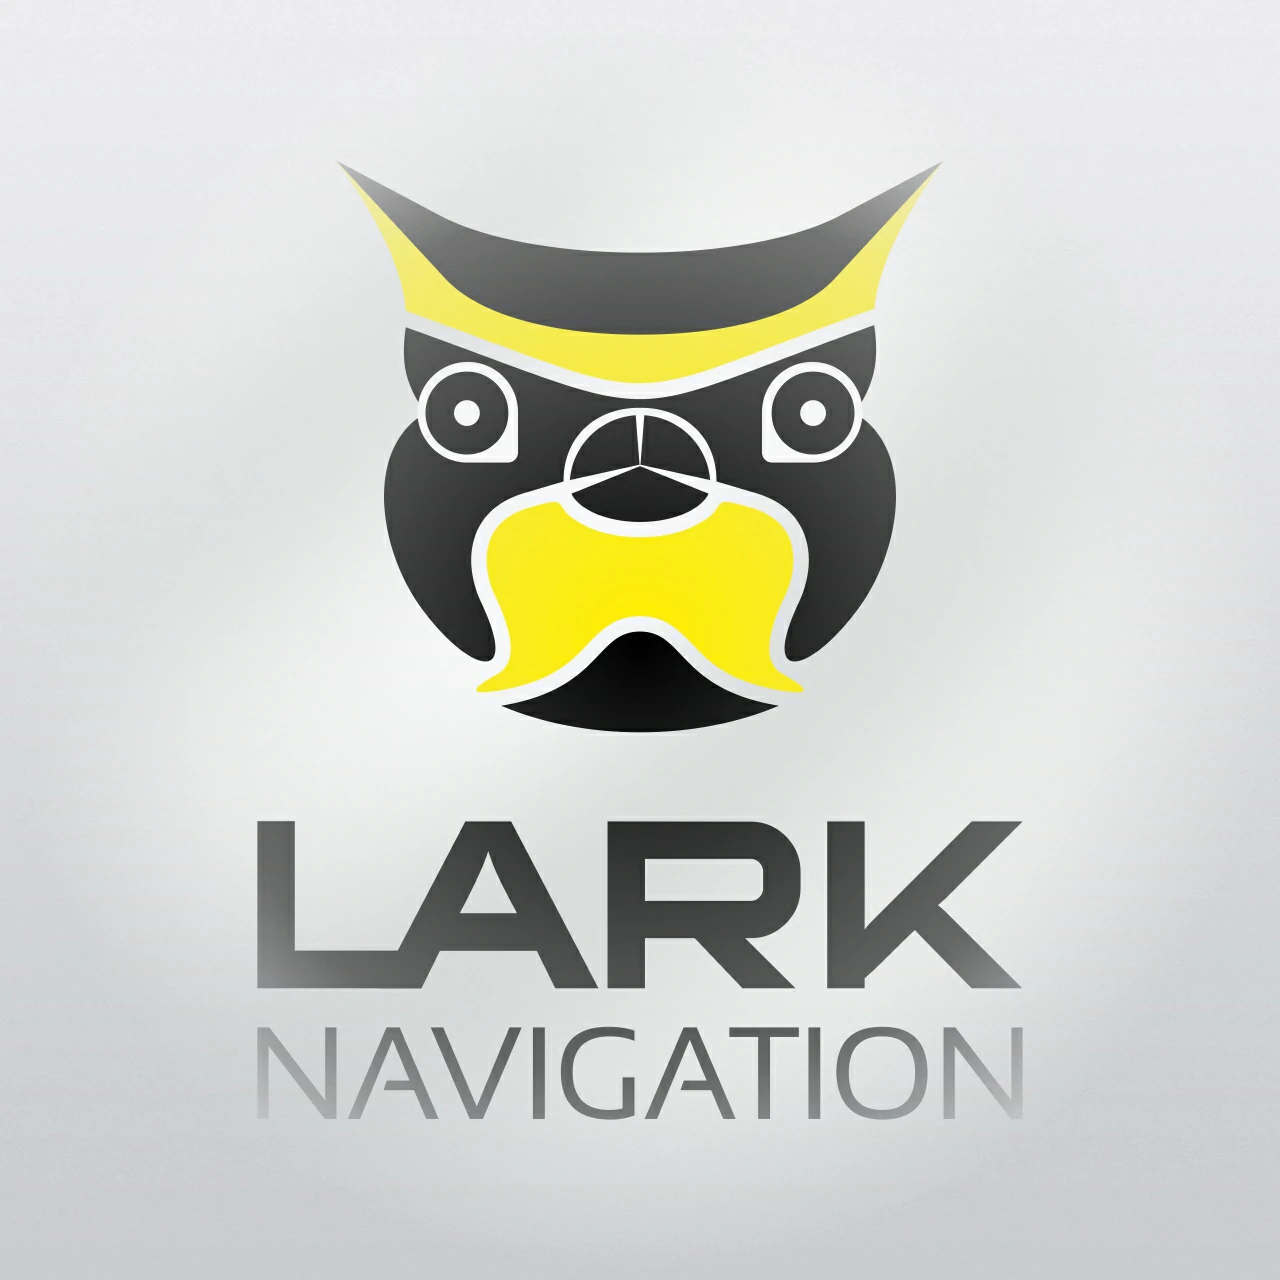 Lark Navigation